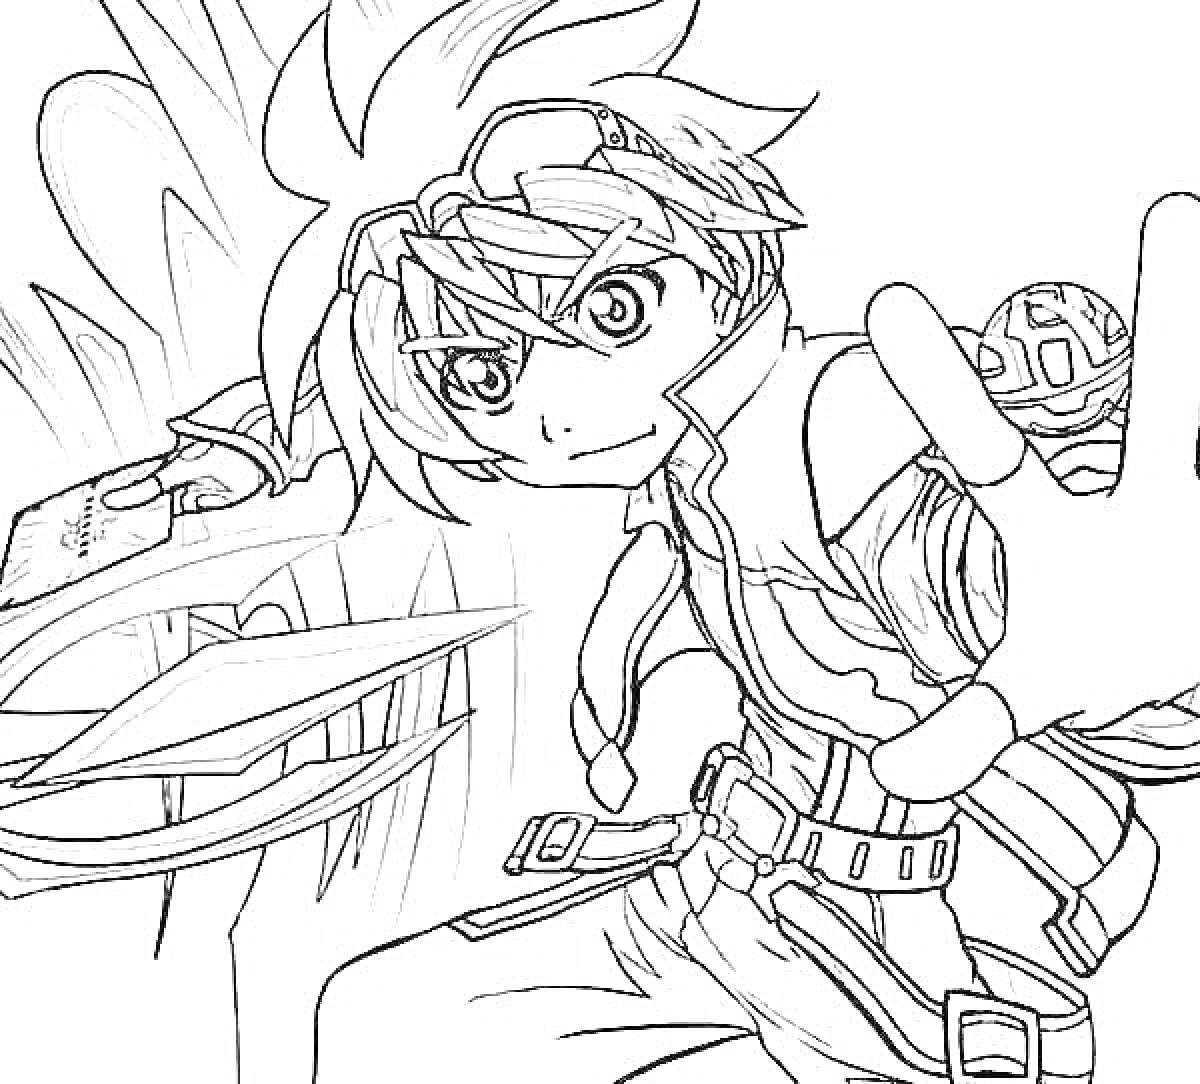 аниме персонаж с запястьями на ремнях, мячом и картой, поза для атаки